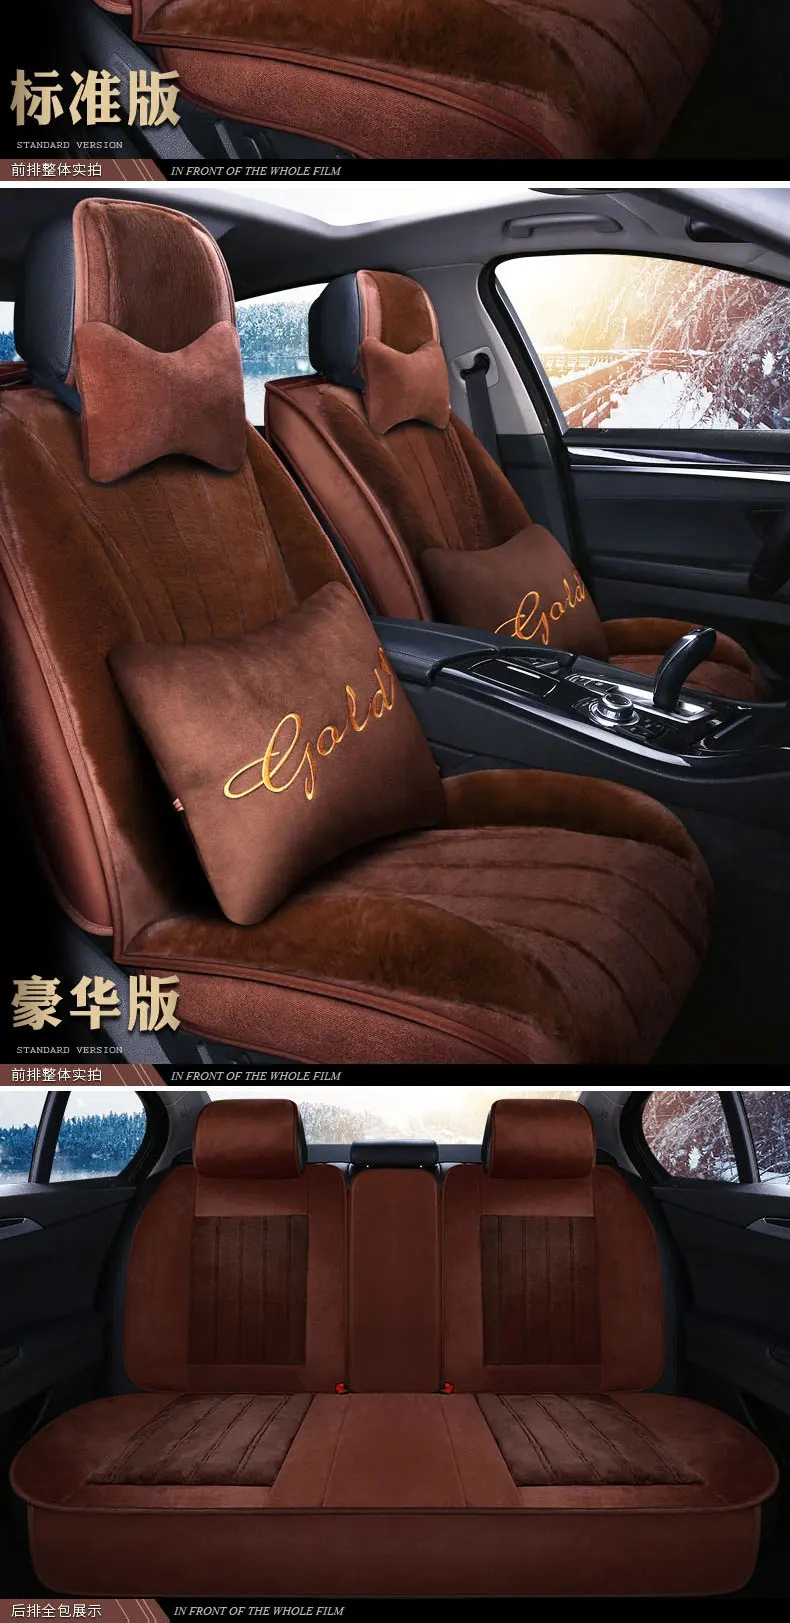 "Чехол для сидения автомобиля специально для Mercedes Benz W164 W166 ml GLE ML350 ML400 ML500 GLE300 GLE320 GLE400 GLE450 GLE500 вкладыш"